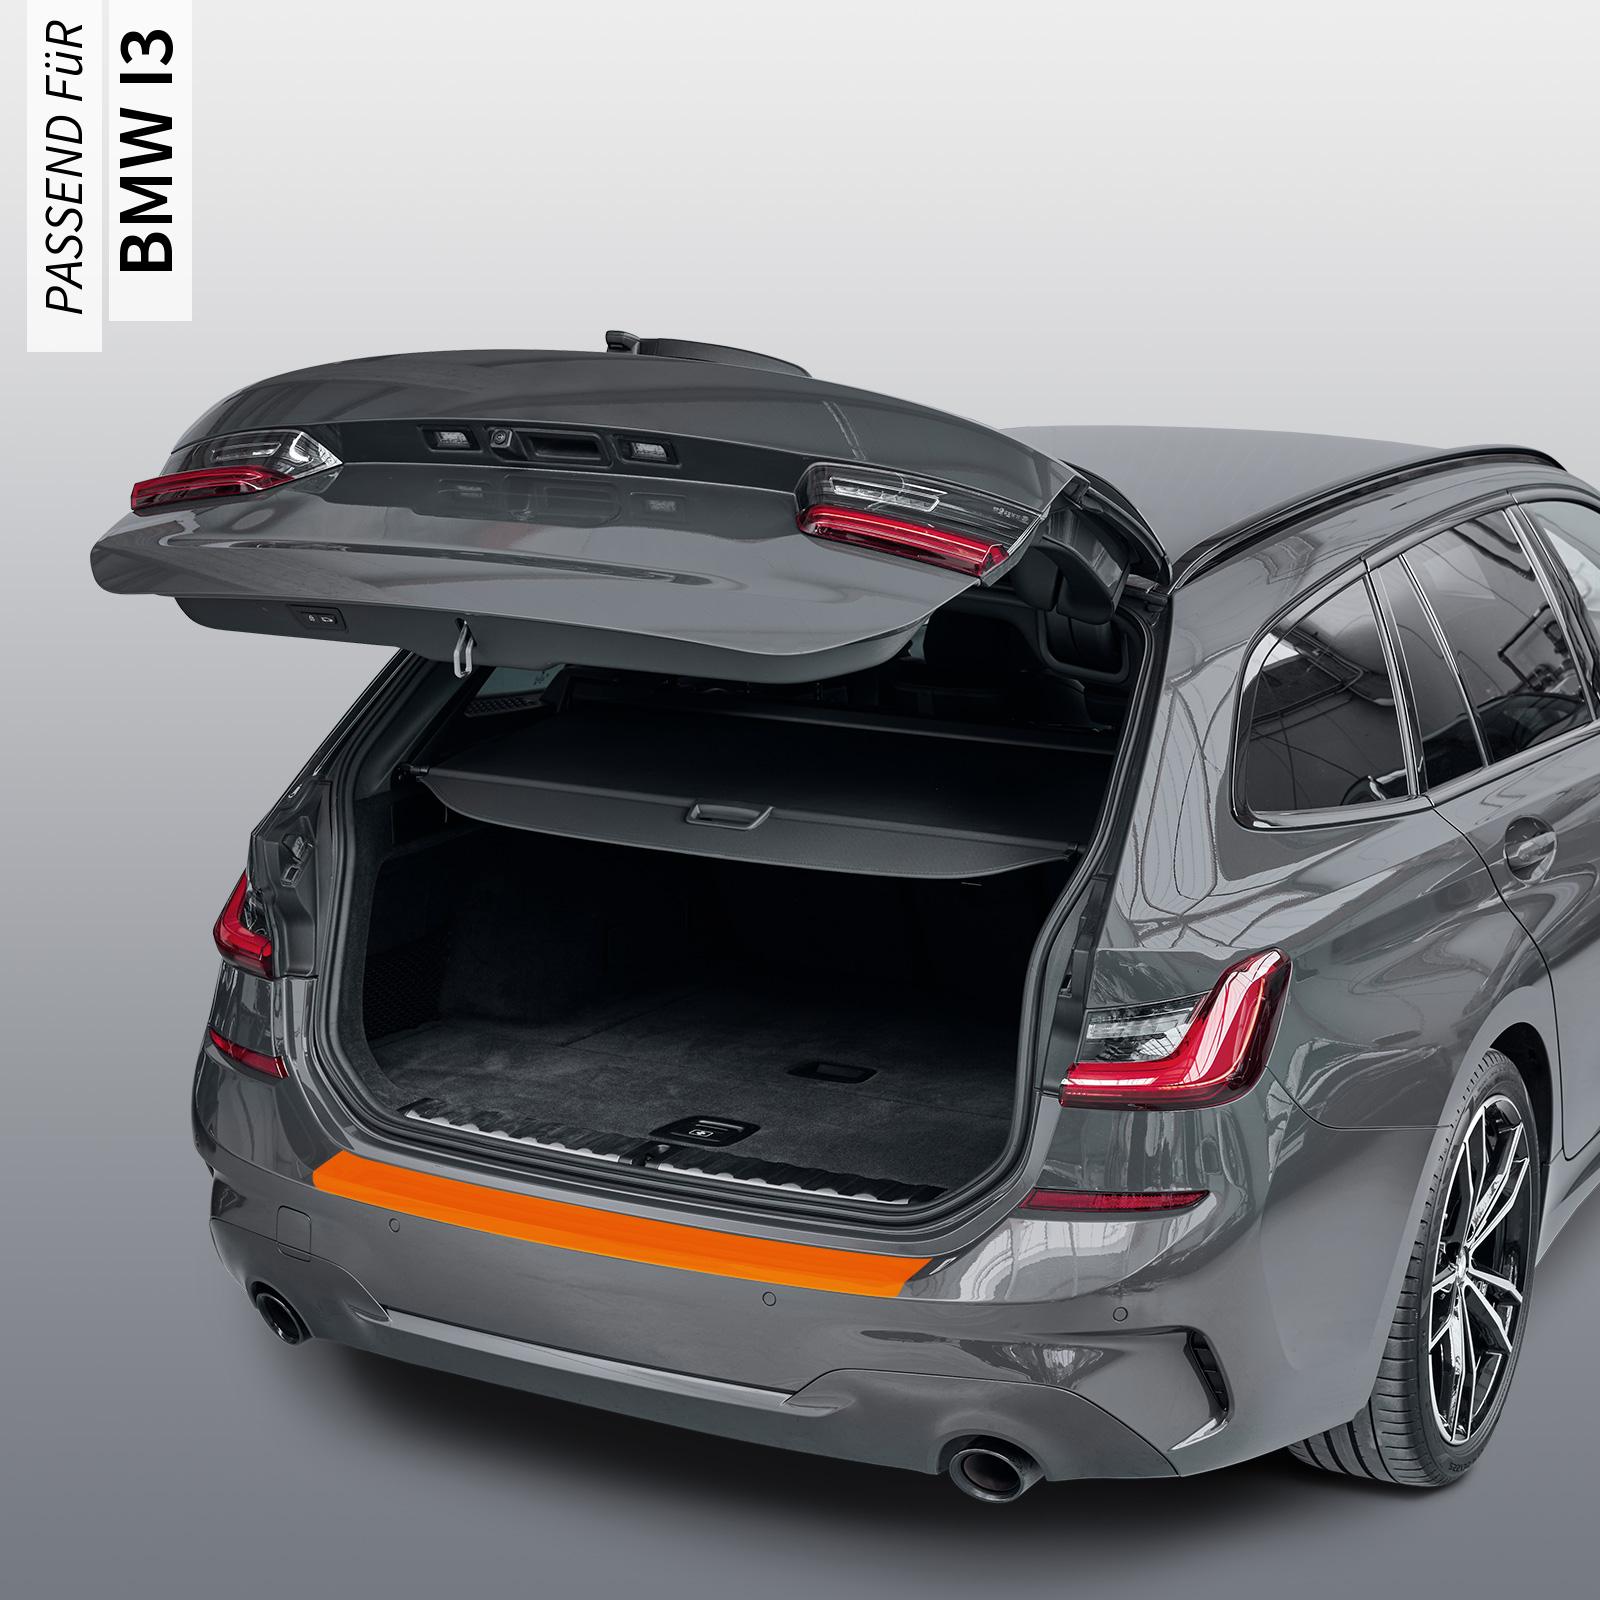 Ladekantenschutzfolie - Schwarz Strukturiert Matt für BMW i3 Typ I01, ab BJ 2013 + Faceliftmodell